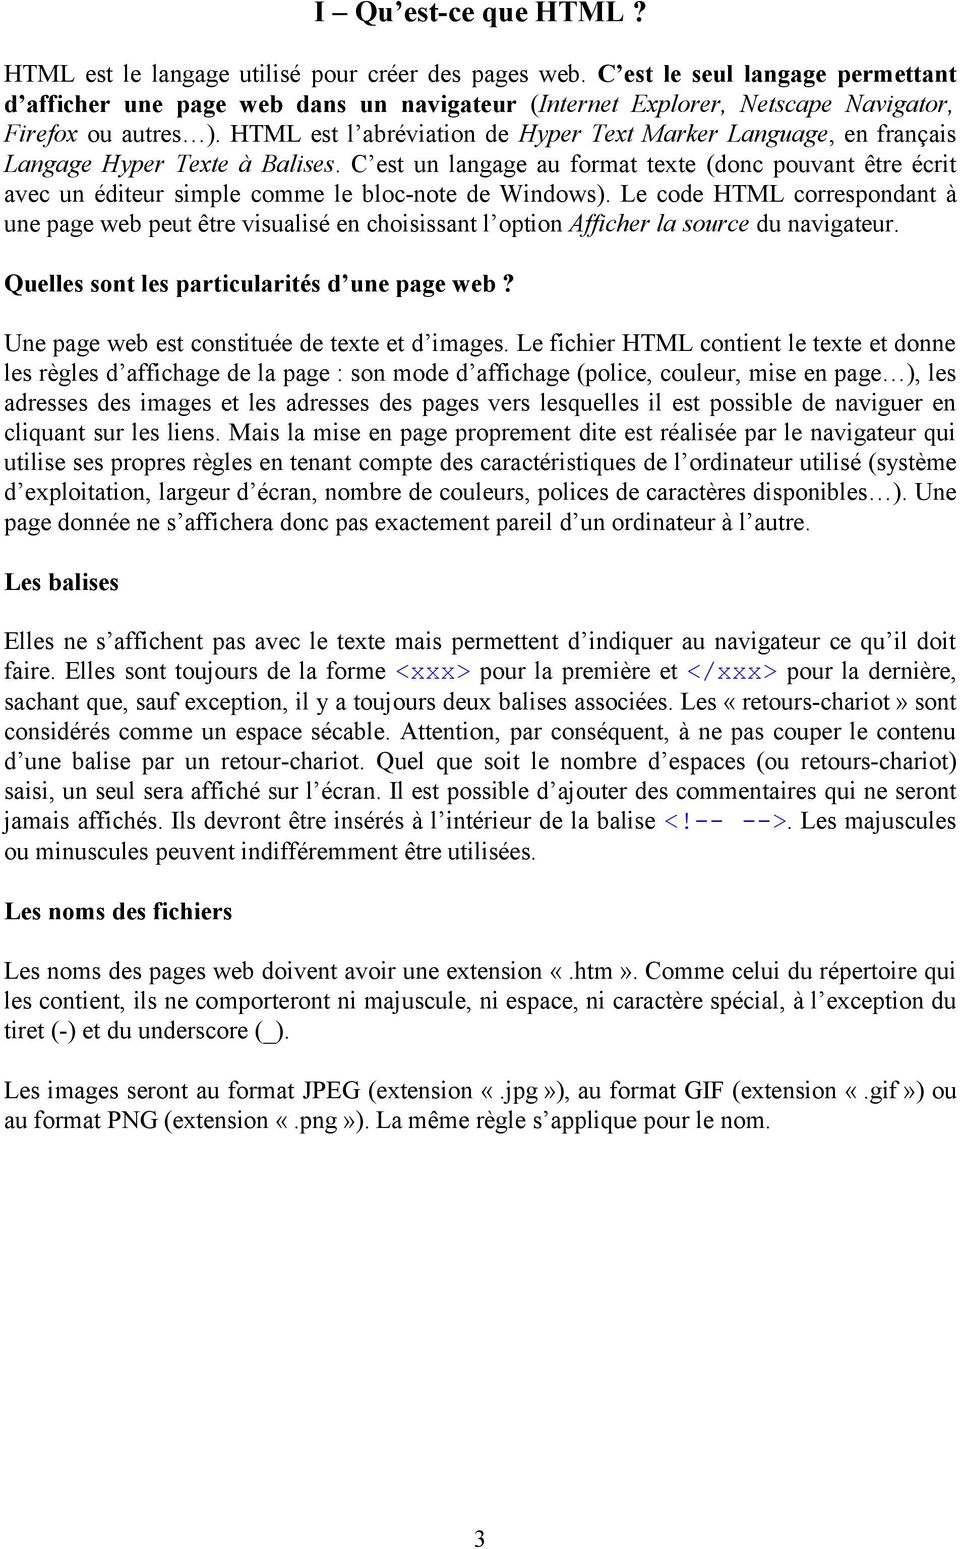 HTML est l abréviation de Hyper Text Marker Language, en français Langage Hyper Texte à Balises.